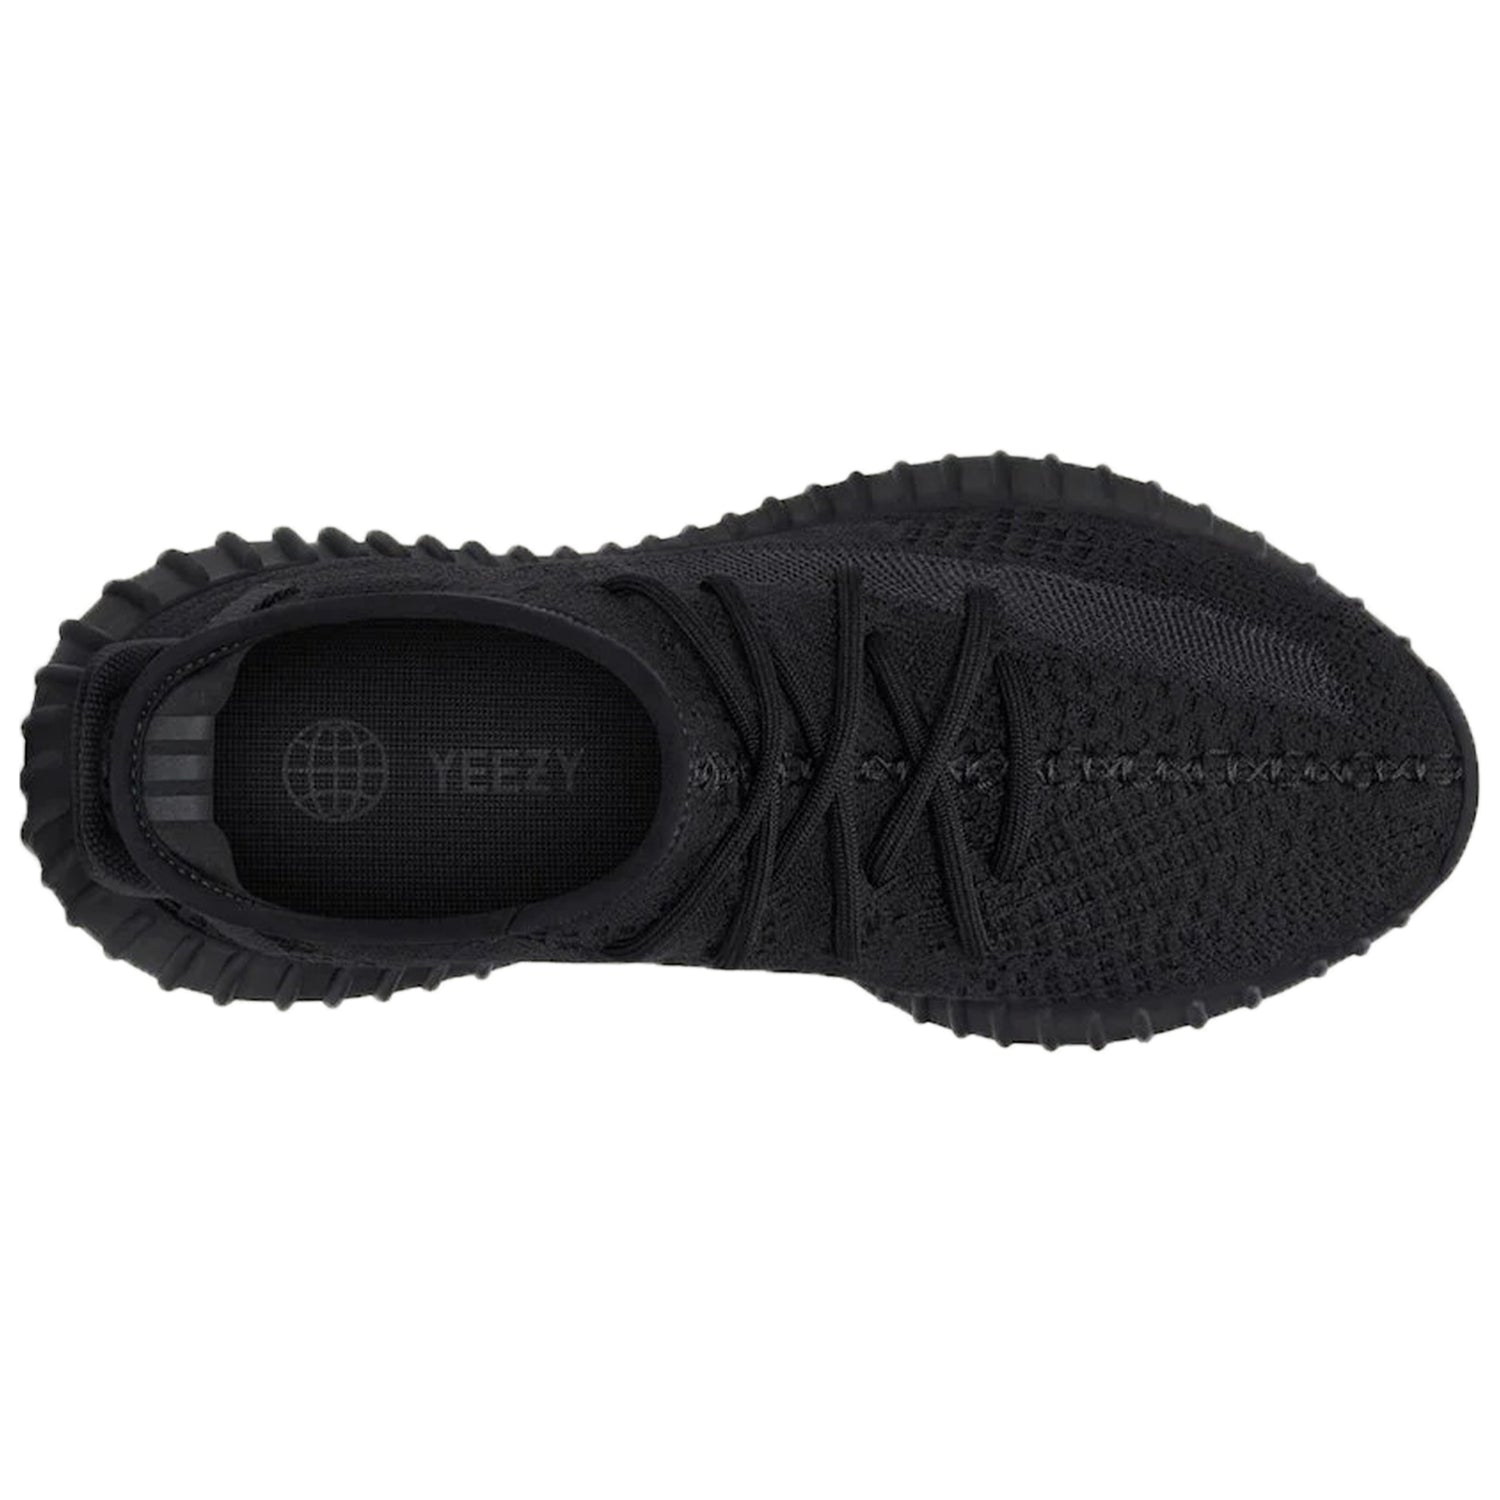 adidas Yeezy Boost 350 V2 Onyx